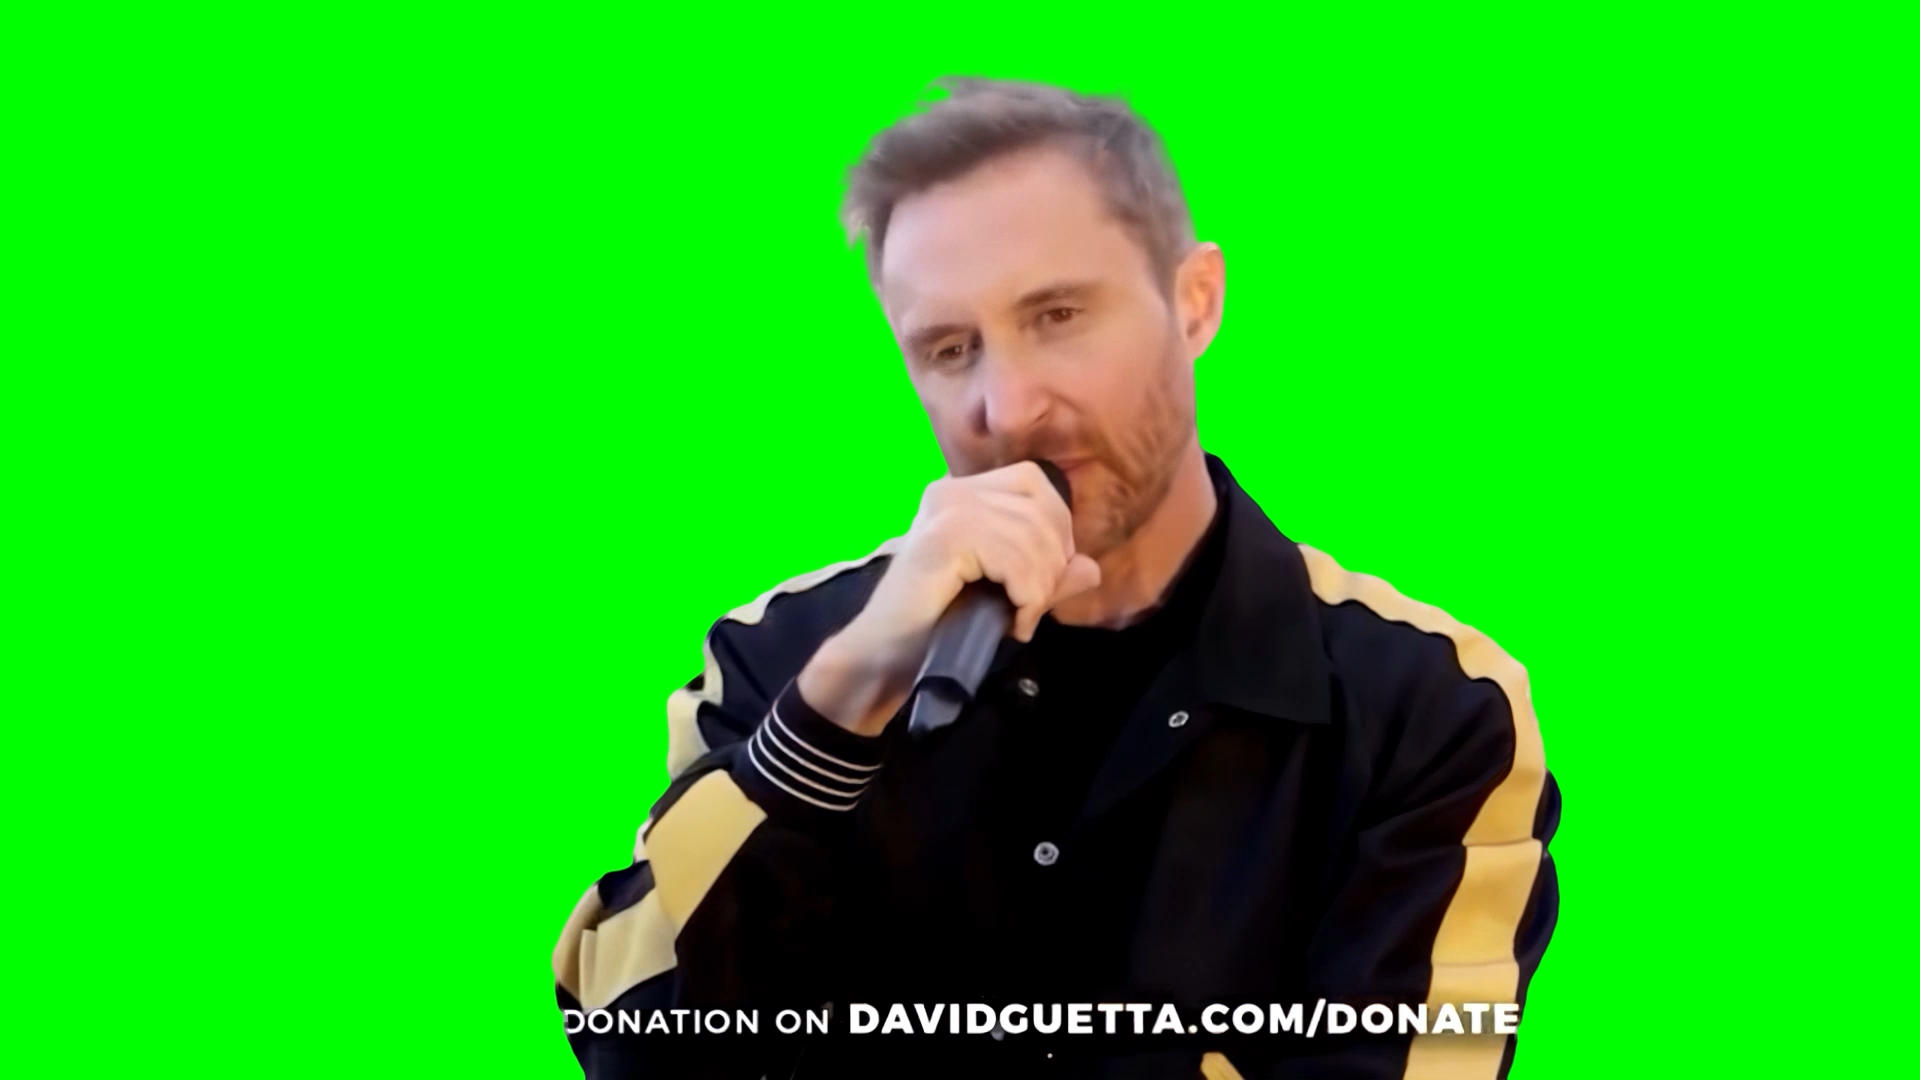 David Guetta ends racism meme (Green Screen)